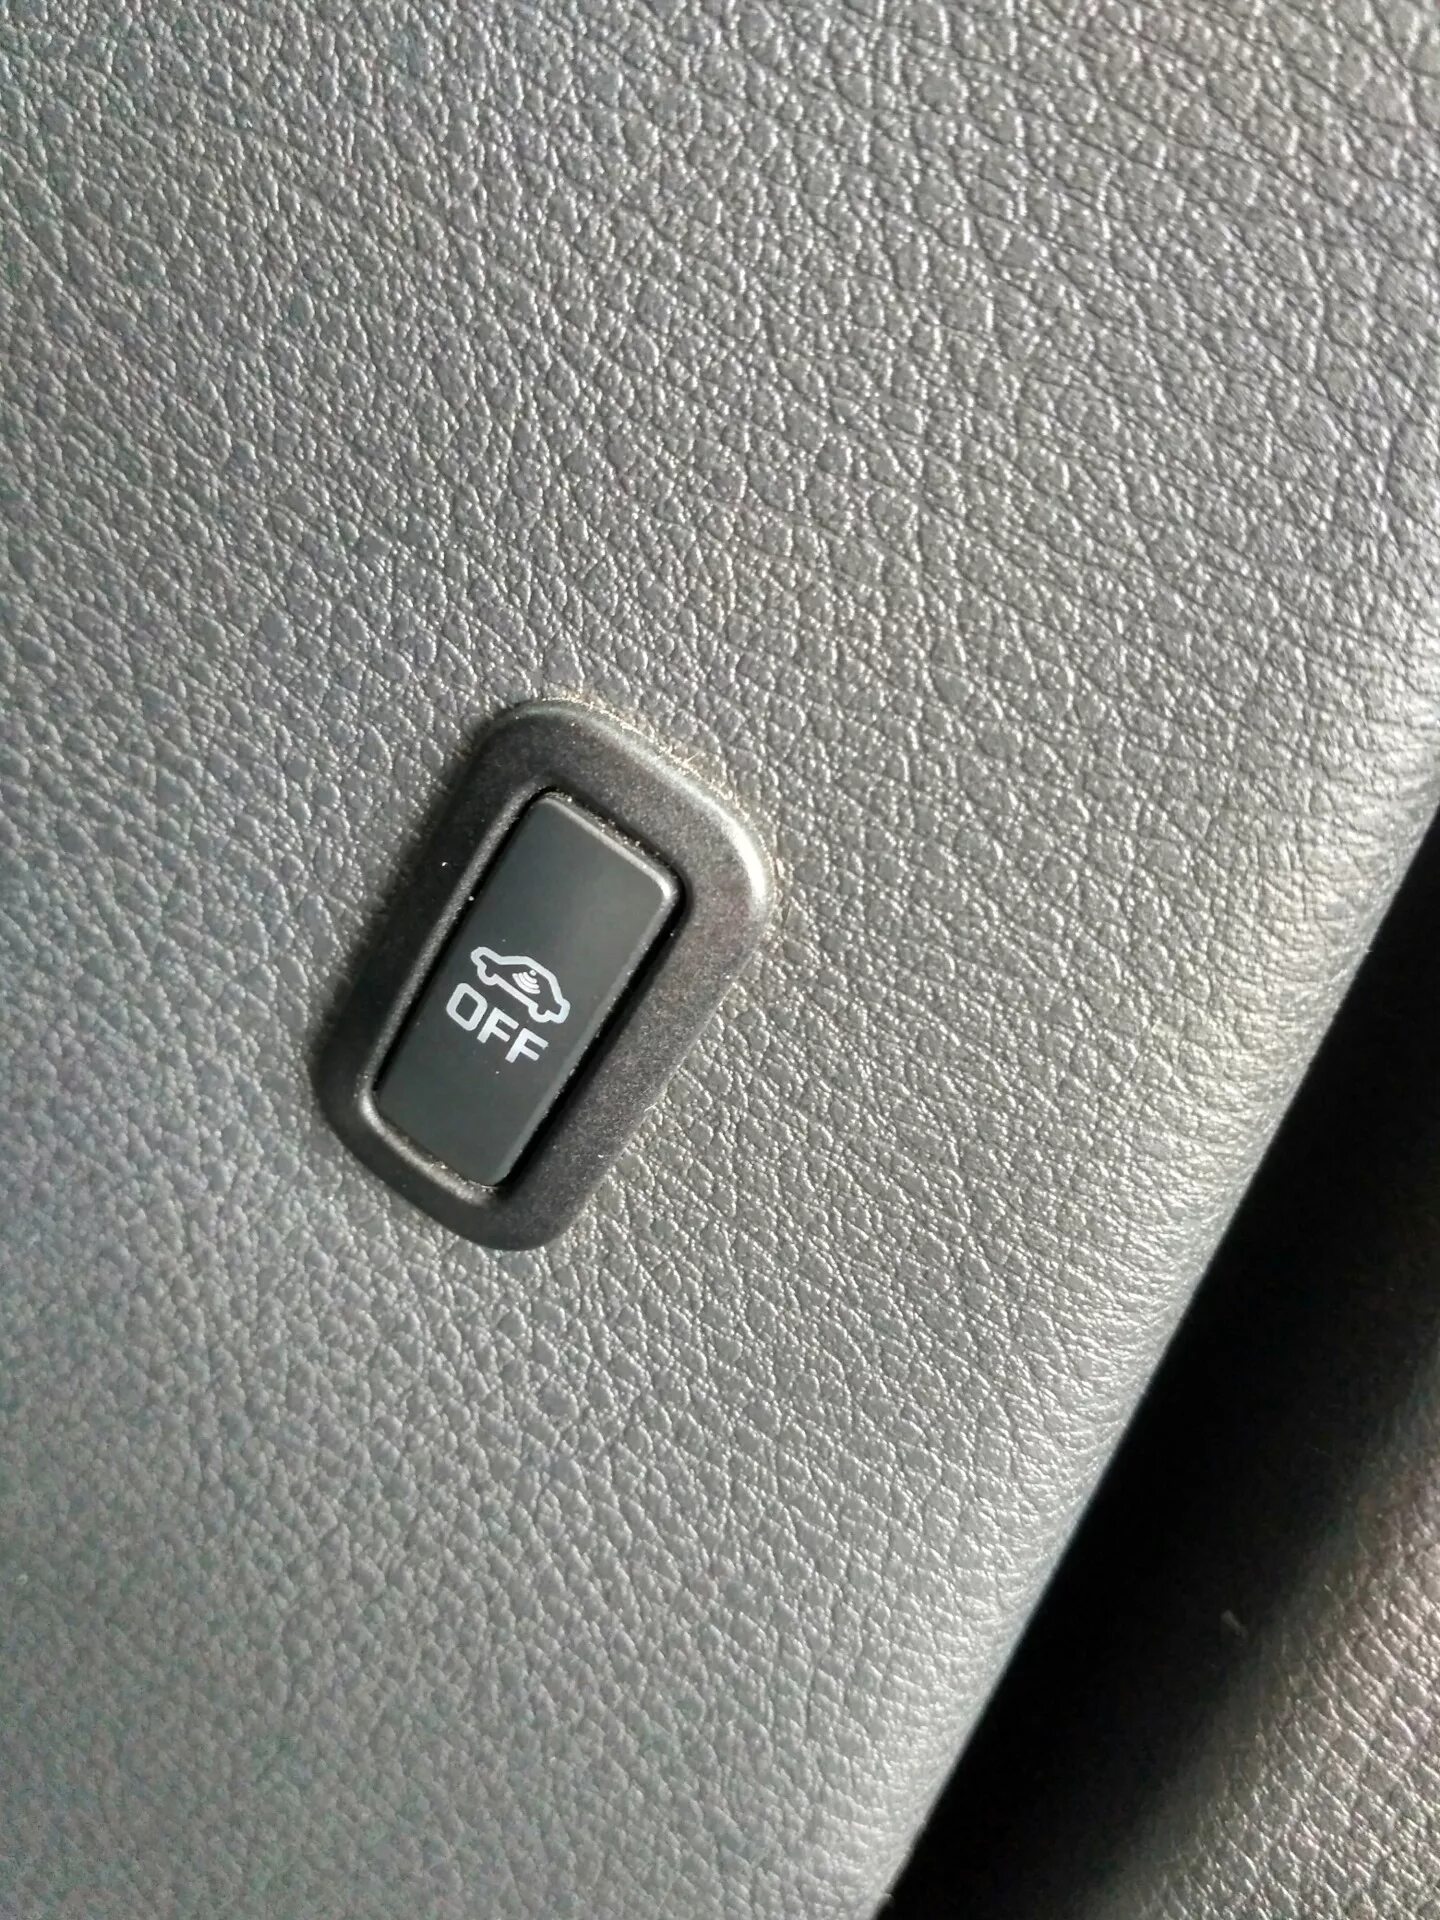 Кнопки vw polo. Кнопка off Volkswagen Tiguan. Пассат б6 кнопка офф. Кнопка ESP off на на Фольксваген поло 5. Кнопки на Фольксваген Пассат в5.